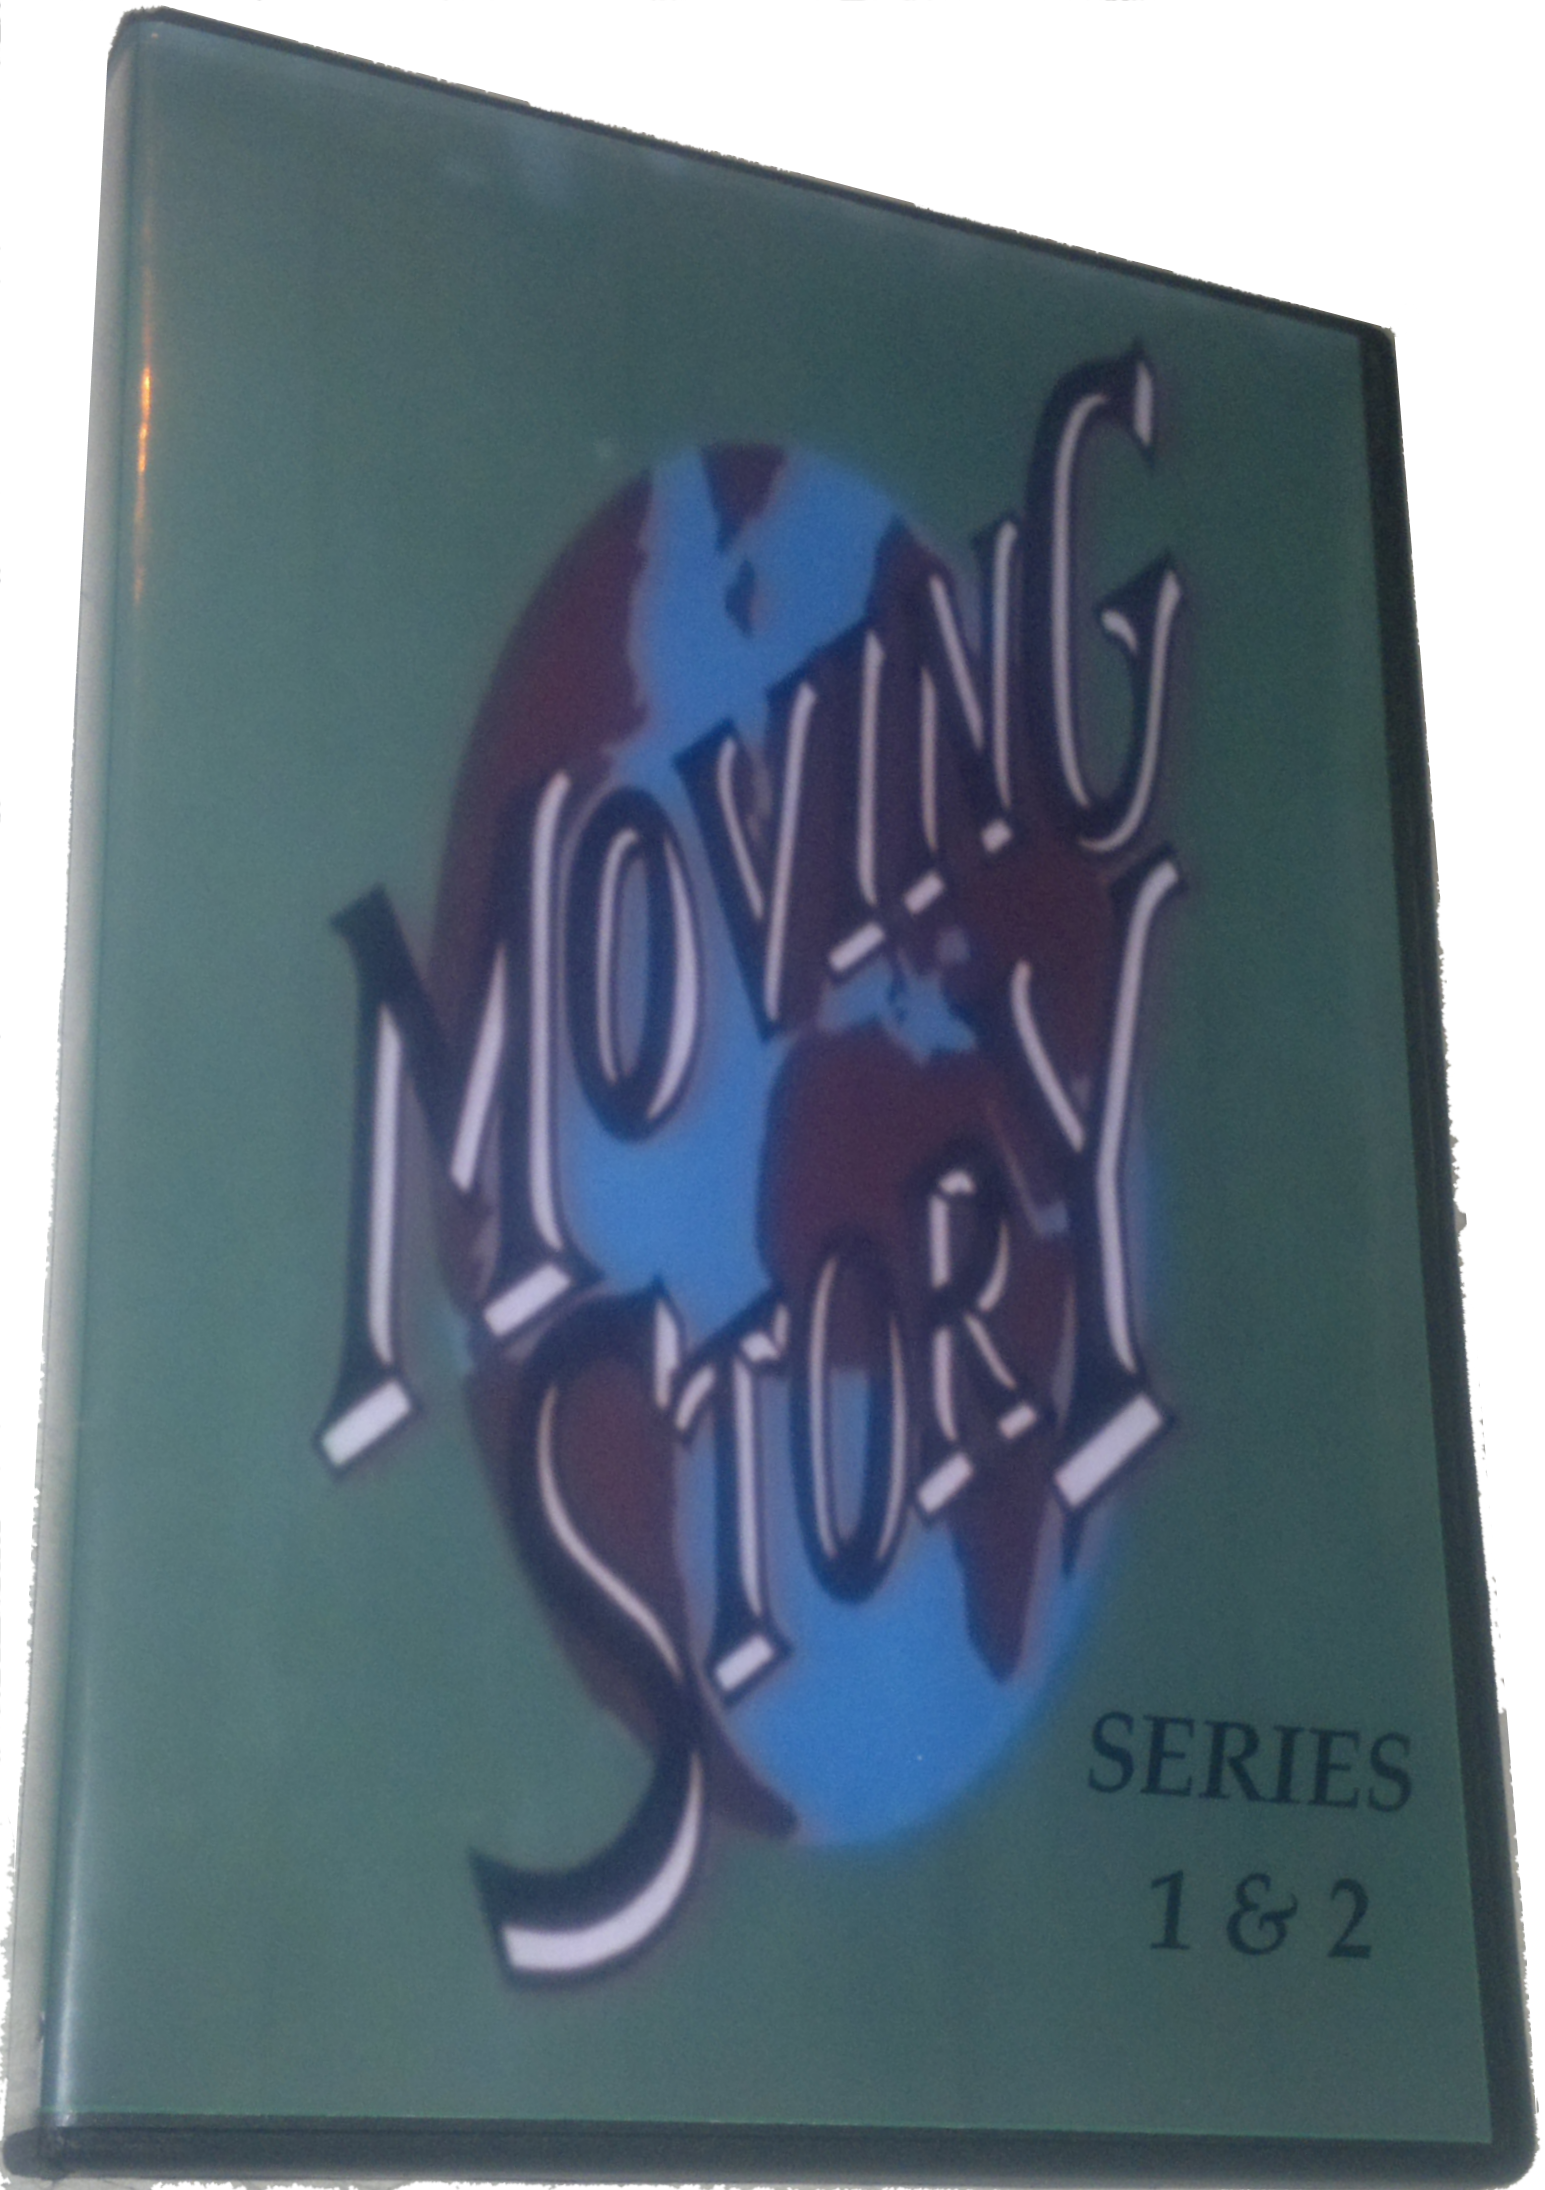 Moving Story (1994) Warren Clarke TV Series Season 1 & 2 DVD